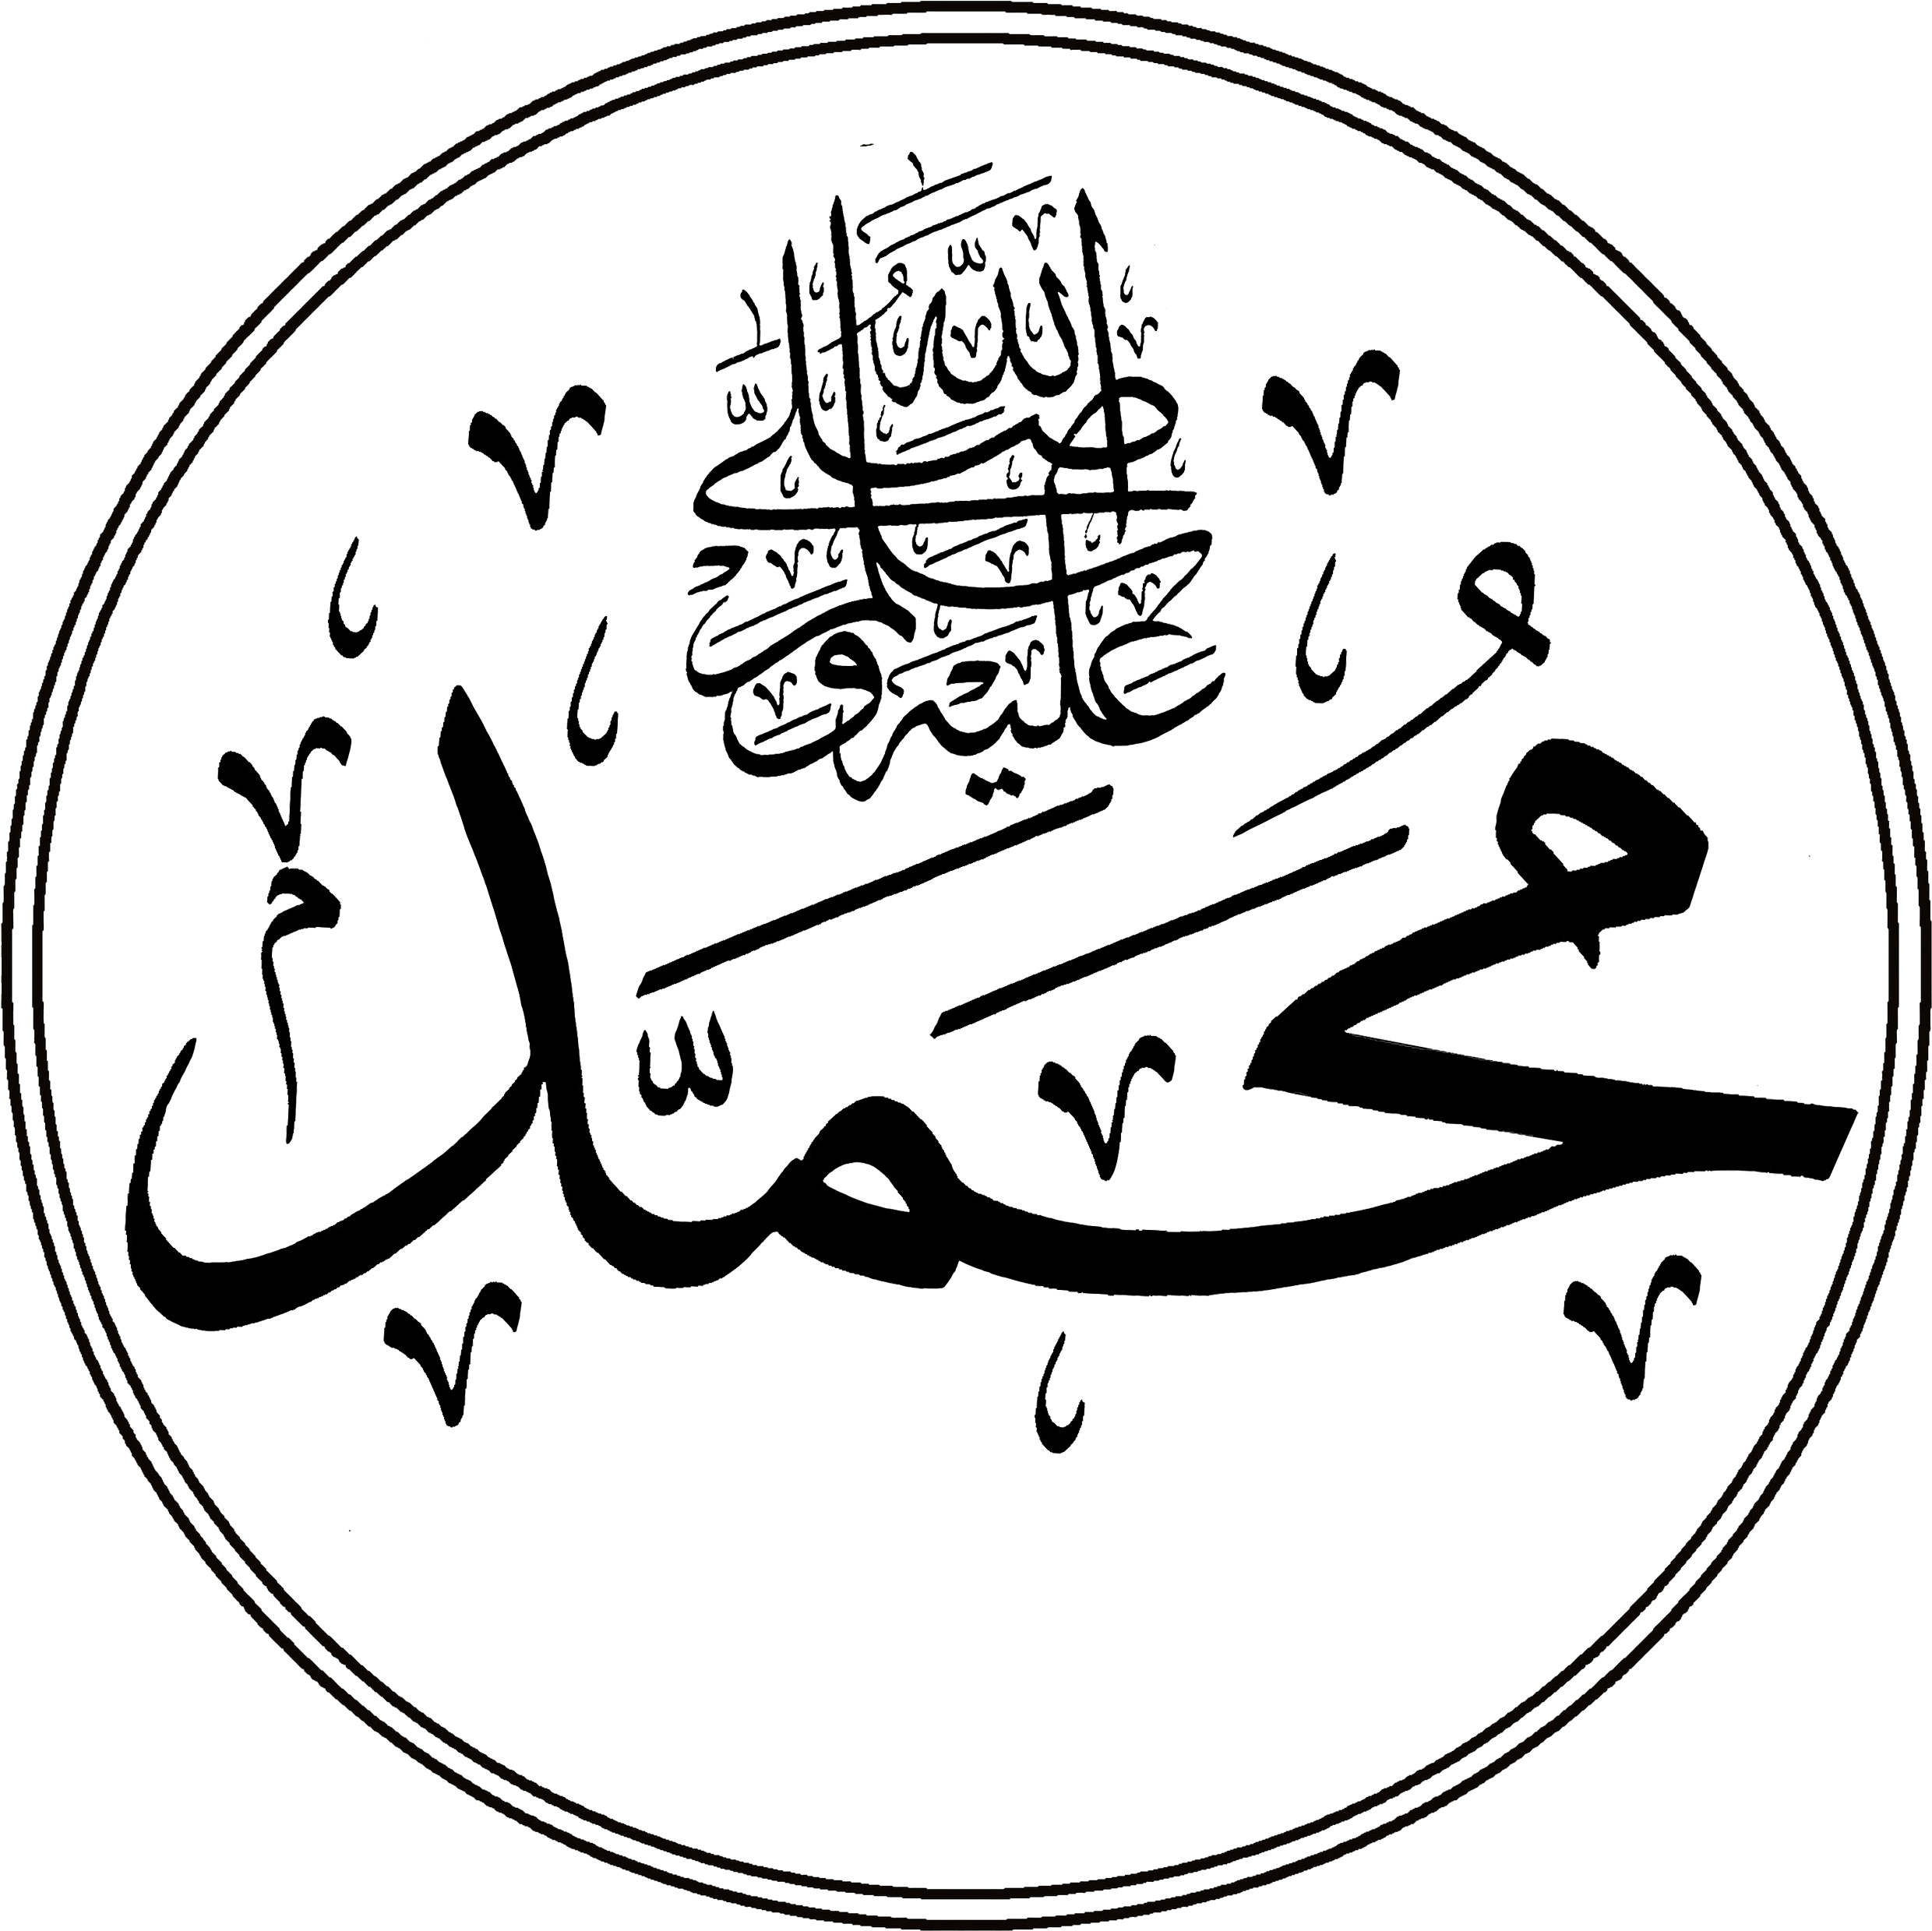 Пророк на арабском языке. Имя пророка Мухаммеда на арабском. Арабские символы пророк Мухаммед. Пророк Мухаммед на арабском языке. Пророк Мухаммед надпись на арабском.